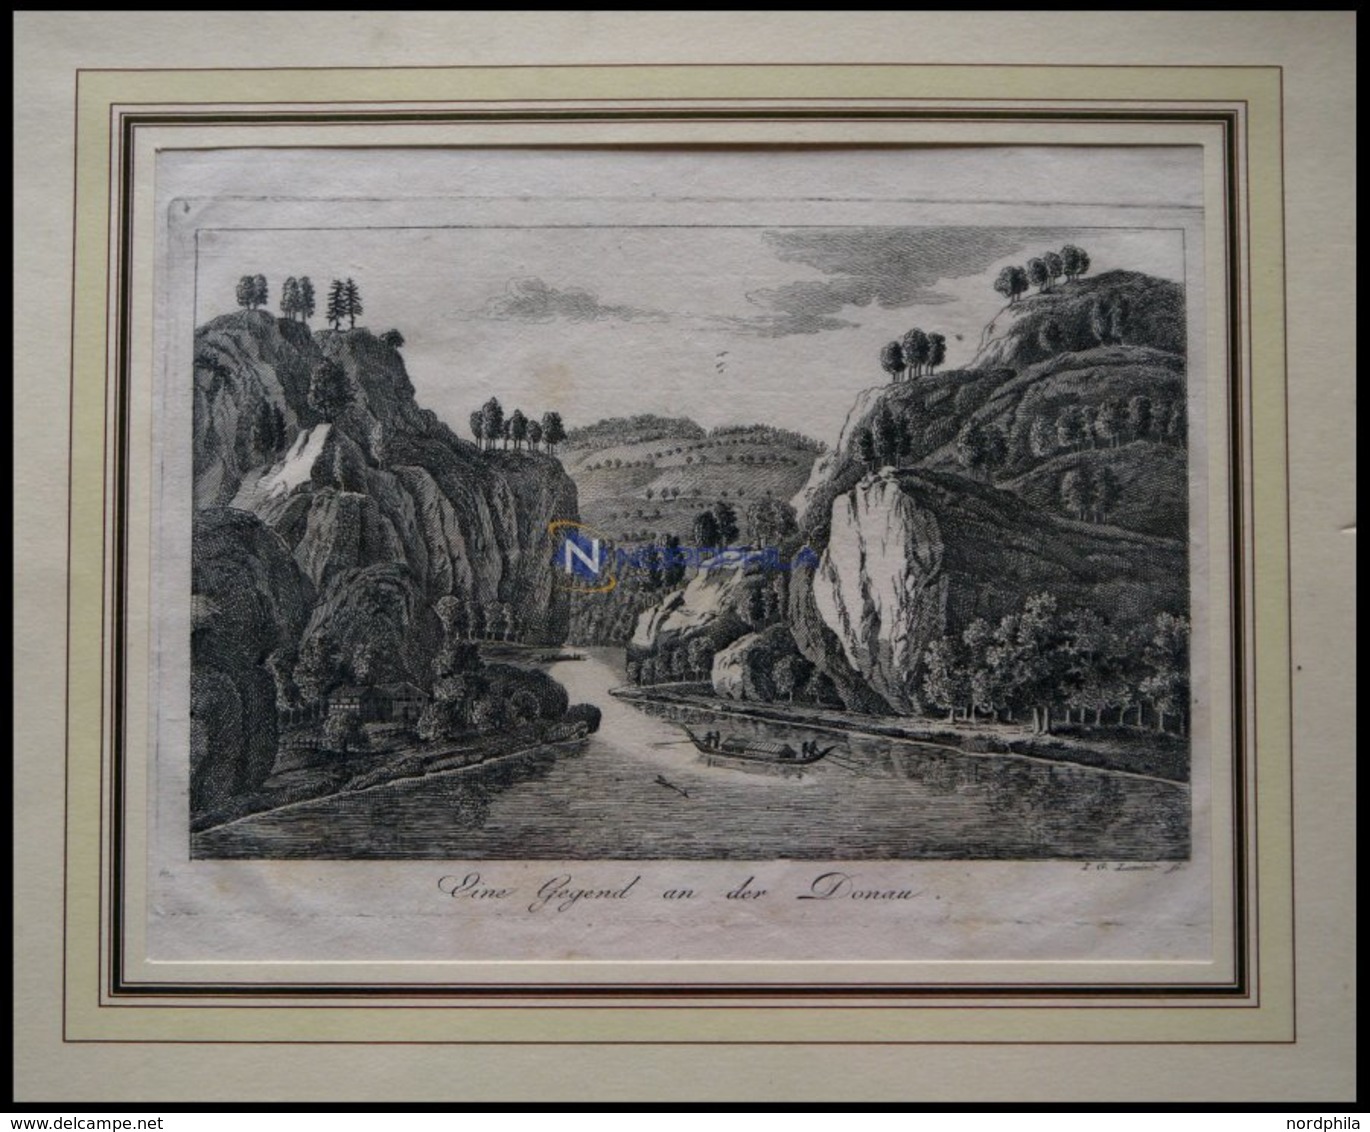 Gegend An Der Donau, Kupferstich Um 1700 - Litografía